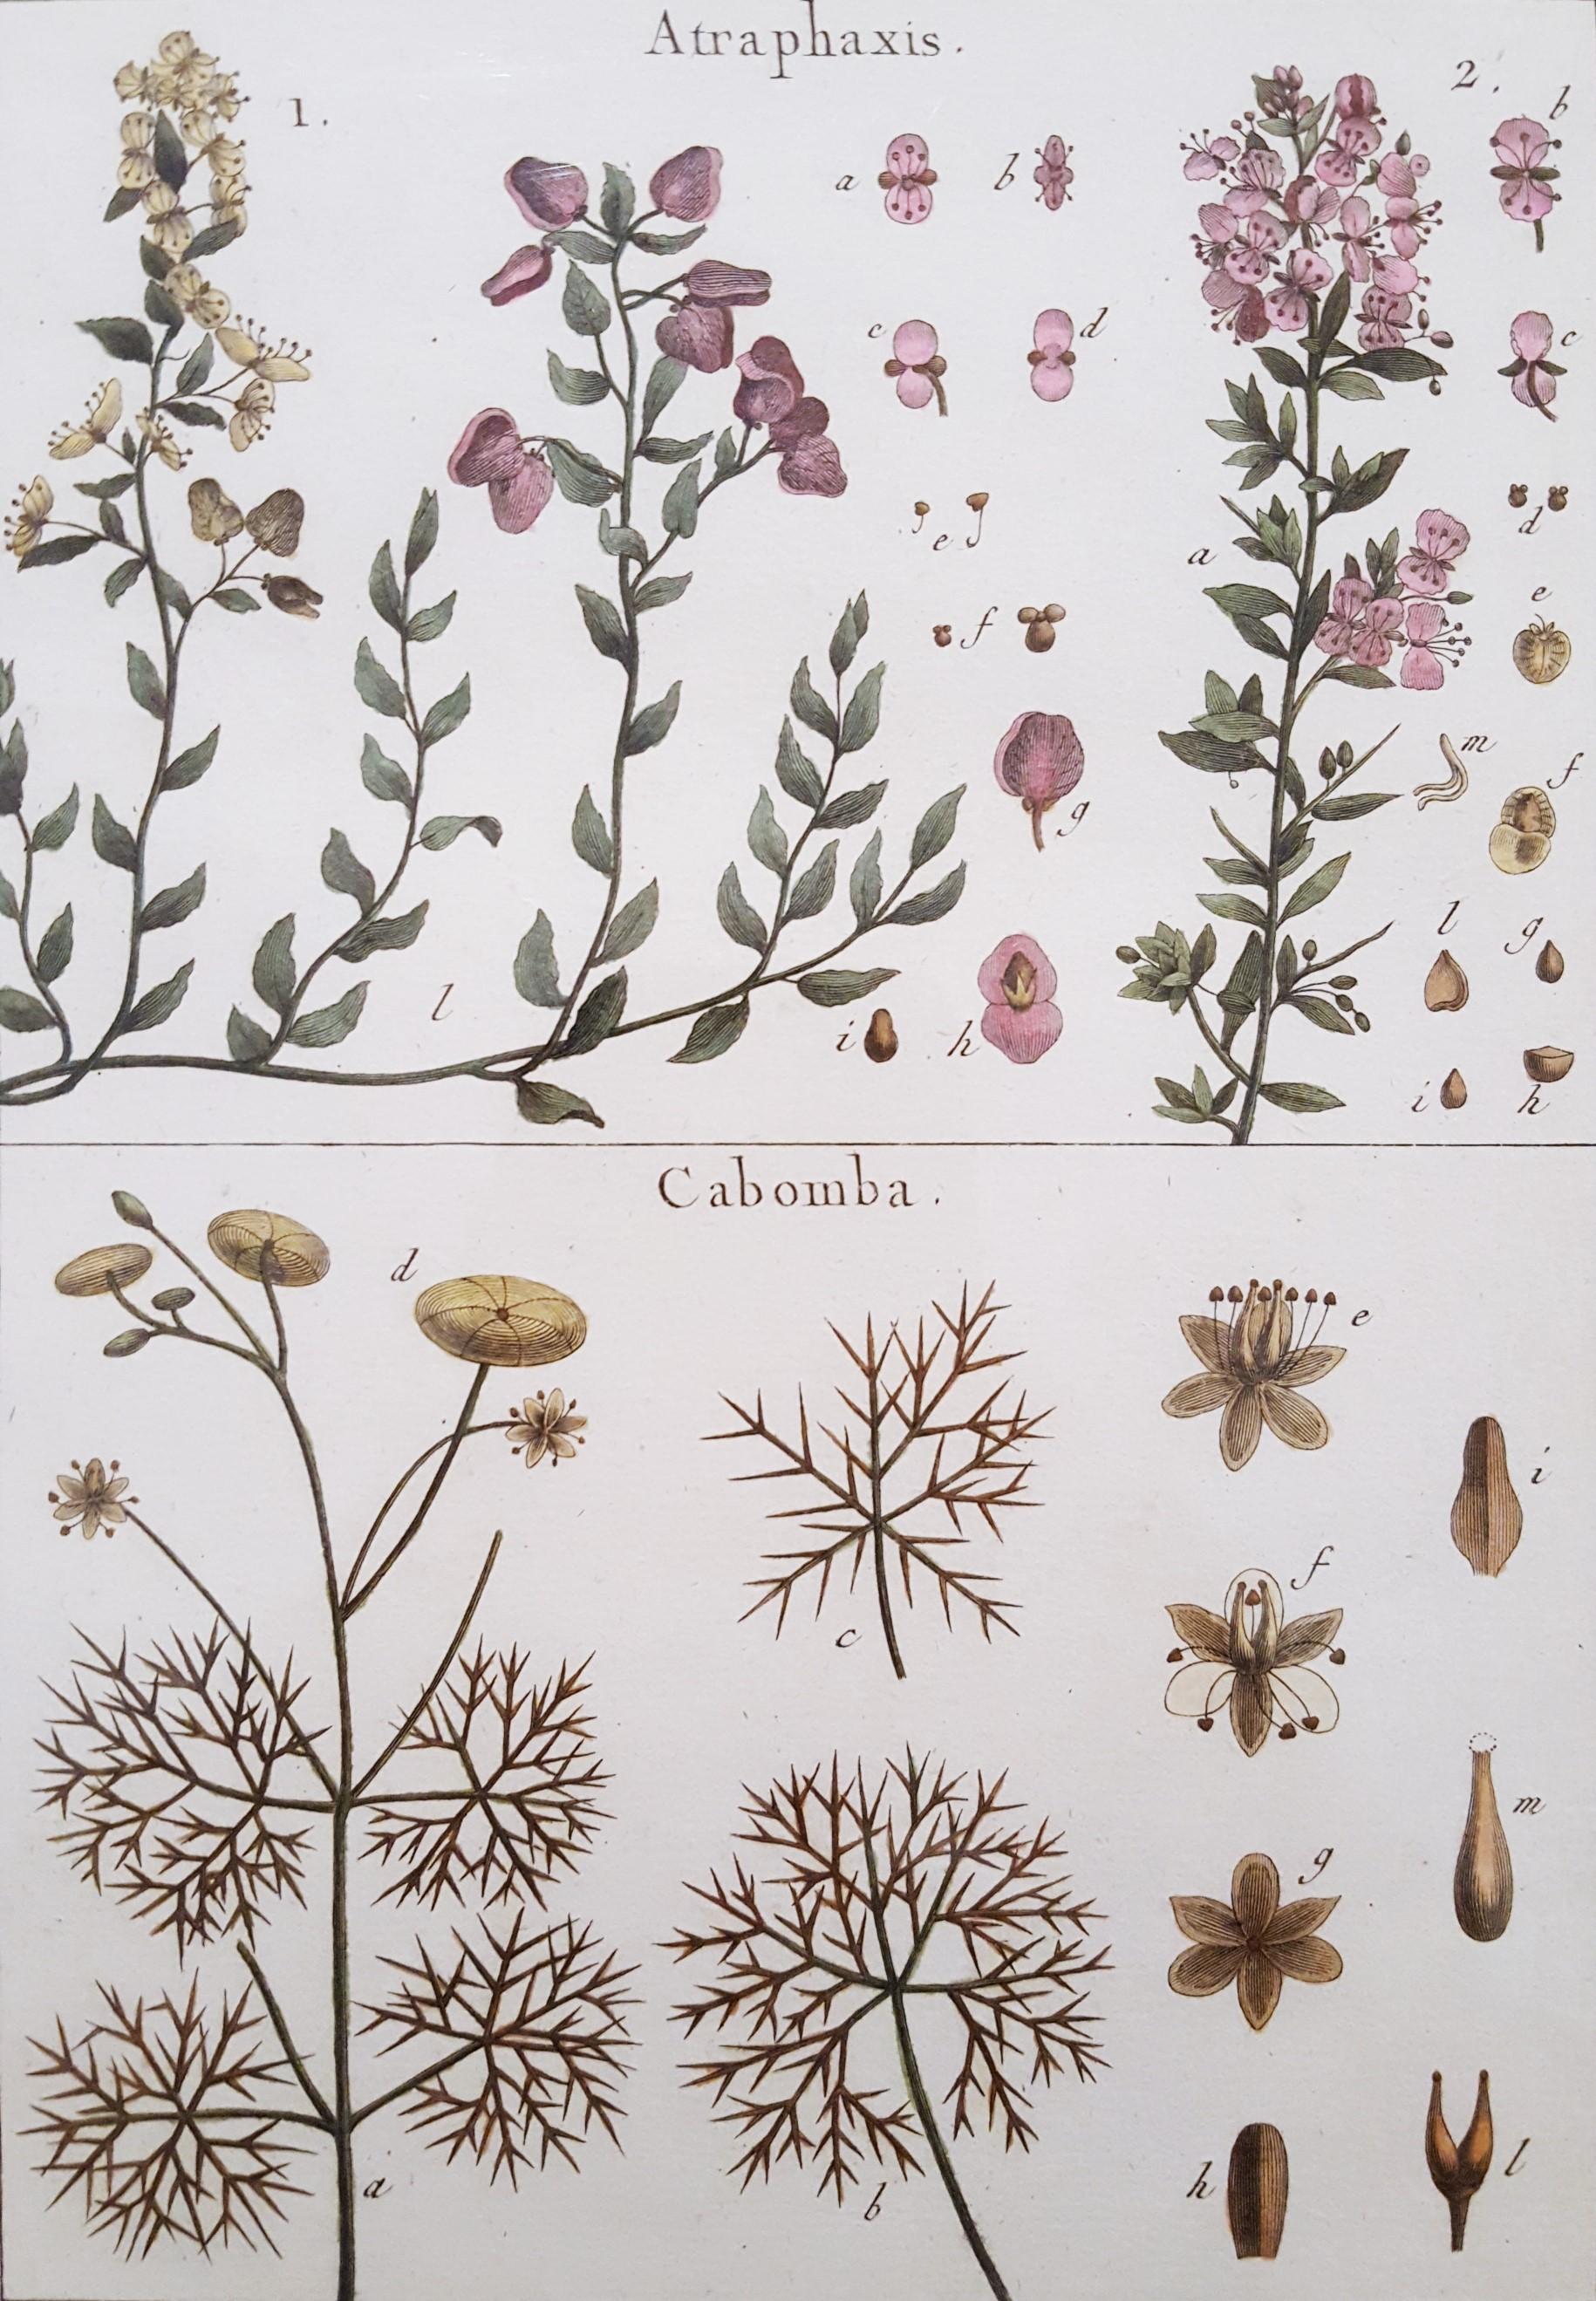 Atraphaxis (Shrub) ; Cabomba (Carolina Fanwort) /// Botanical Botany Plants Art